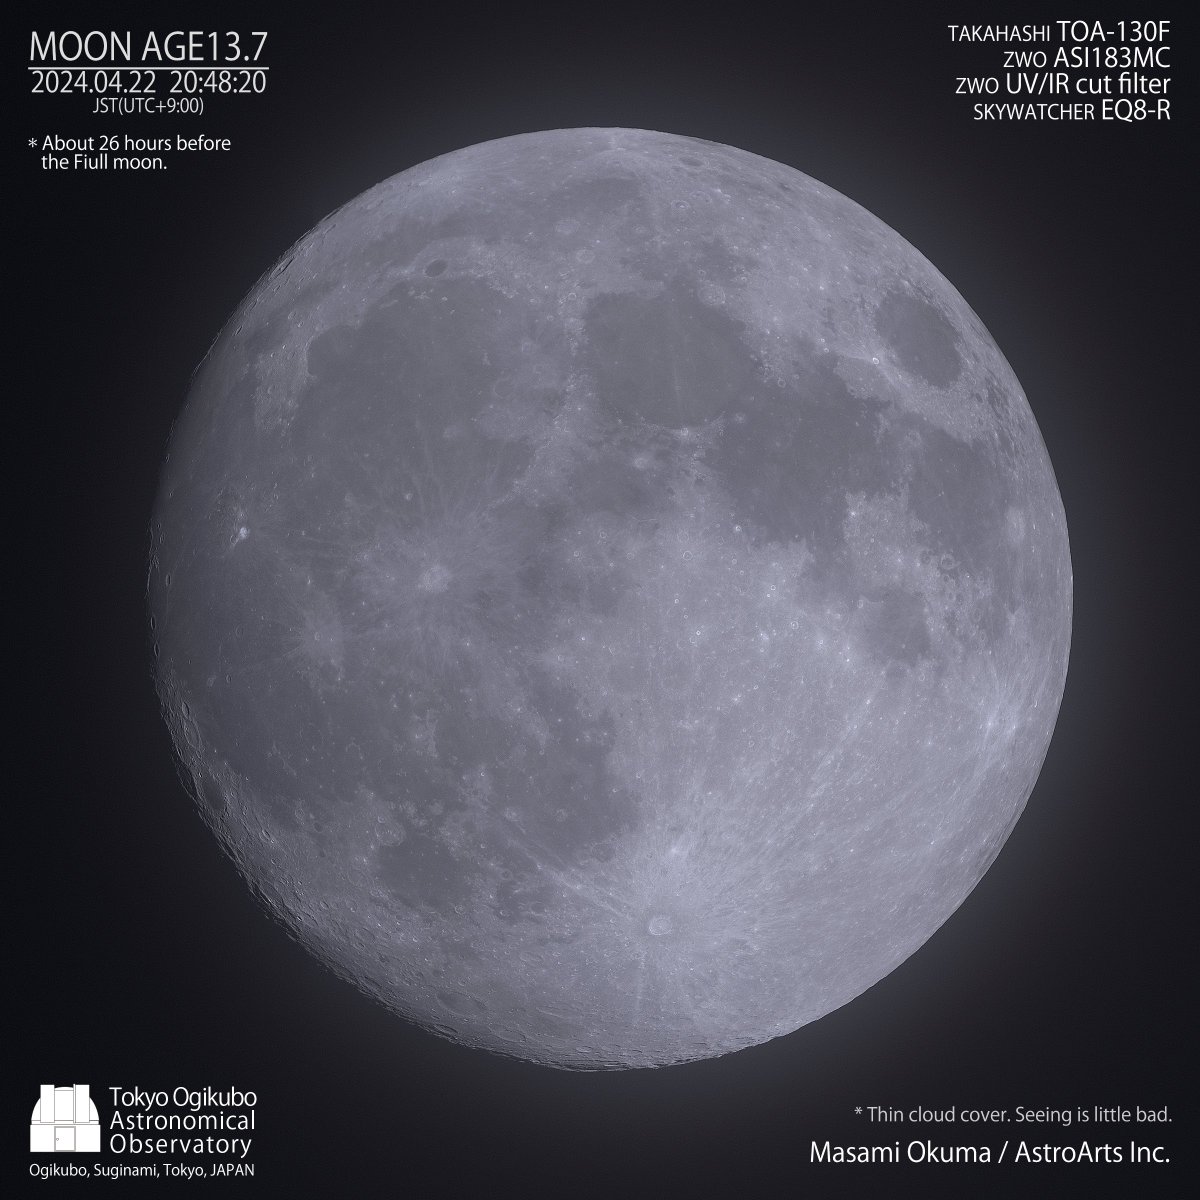 ４月22日、満月（FlowerMoon）前日の朧月。雲が厚くなったり薄くなったりしながらも、途切れることのない曇天。やや薄くなったタイミングで撮影。
#MOONAGE  #月の満ち欠け